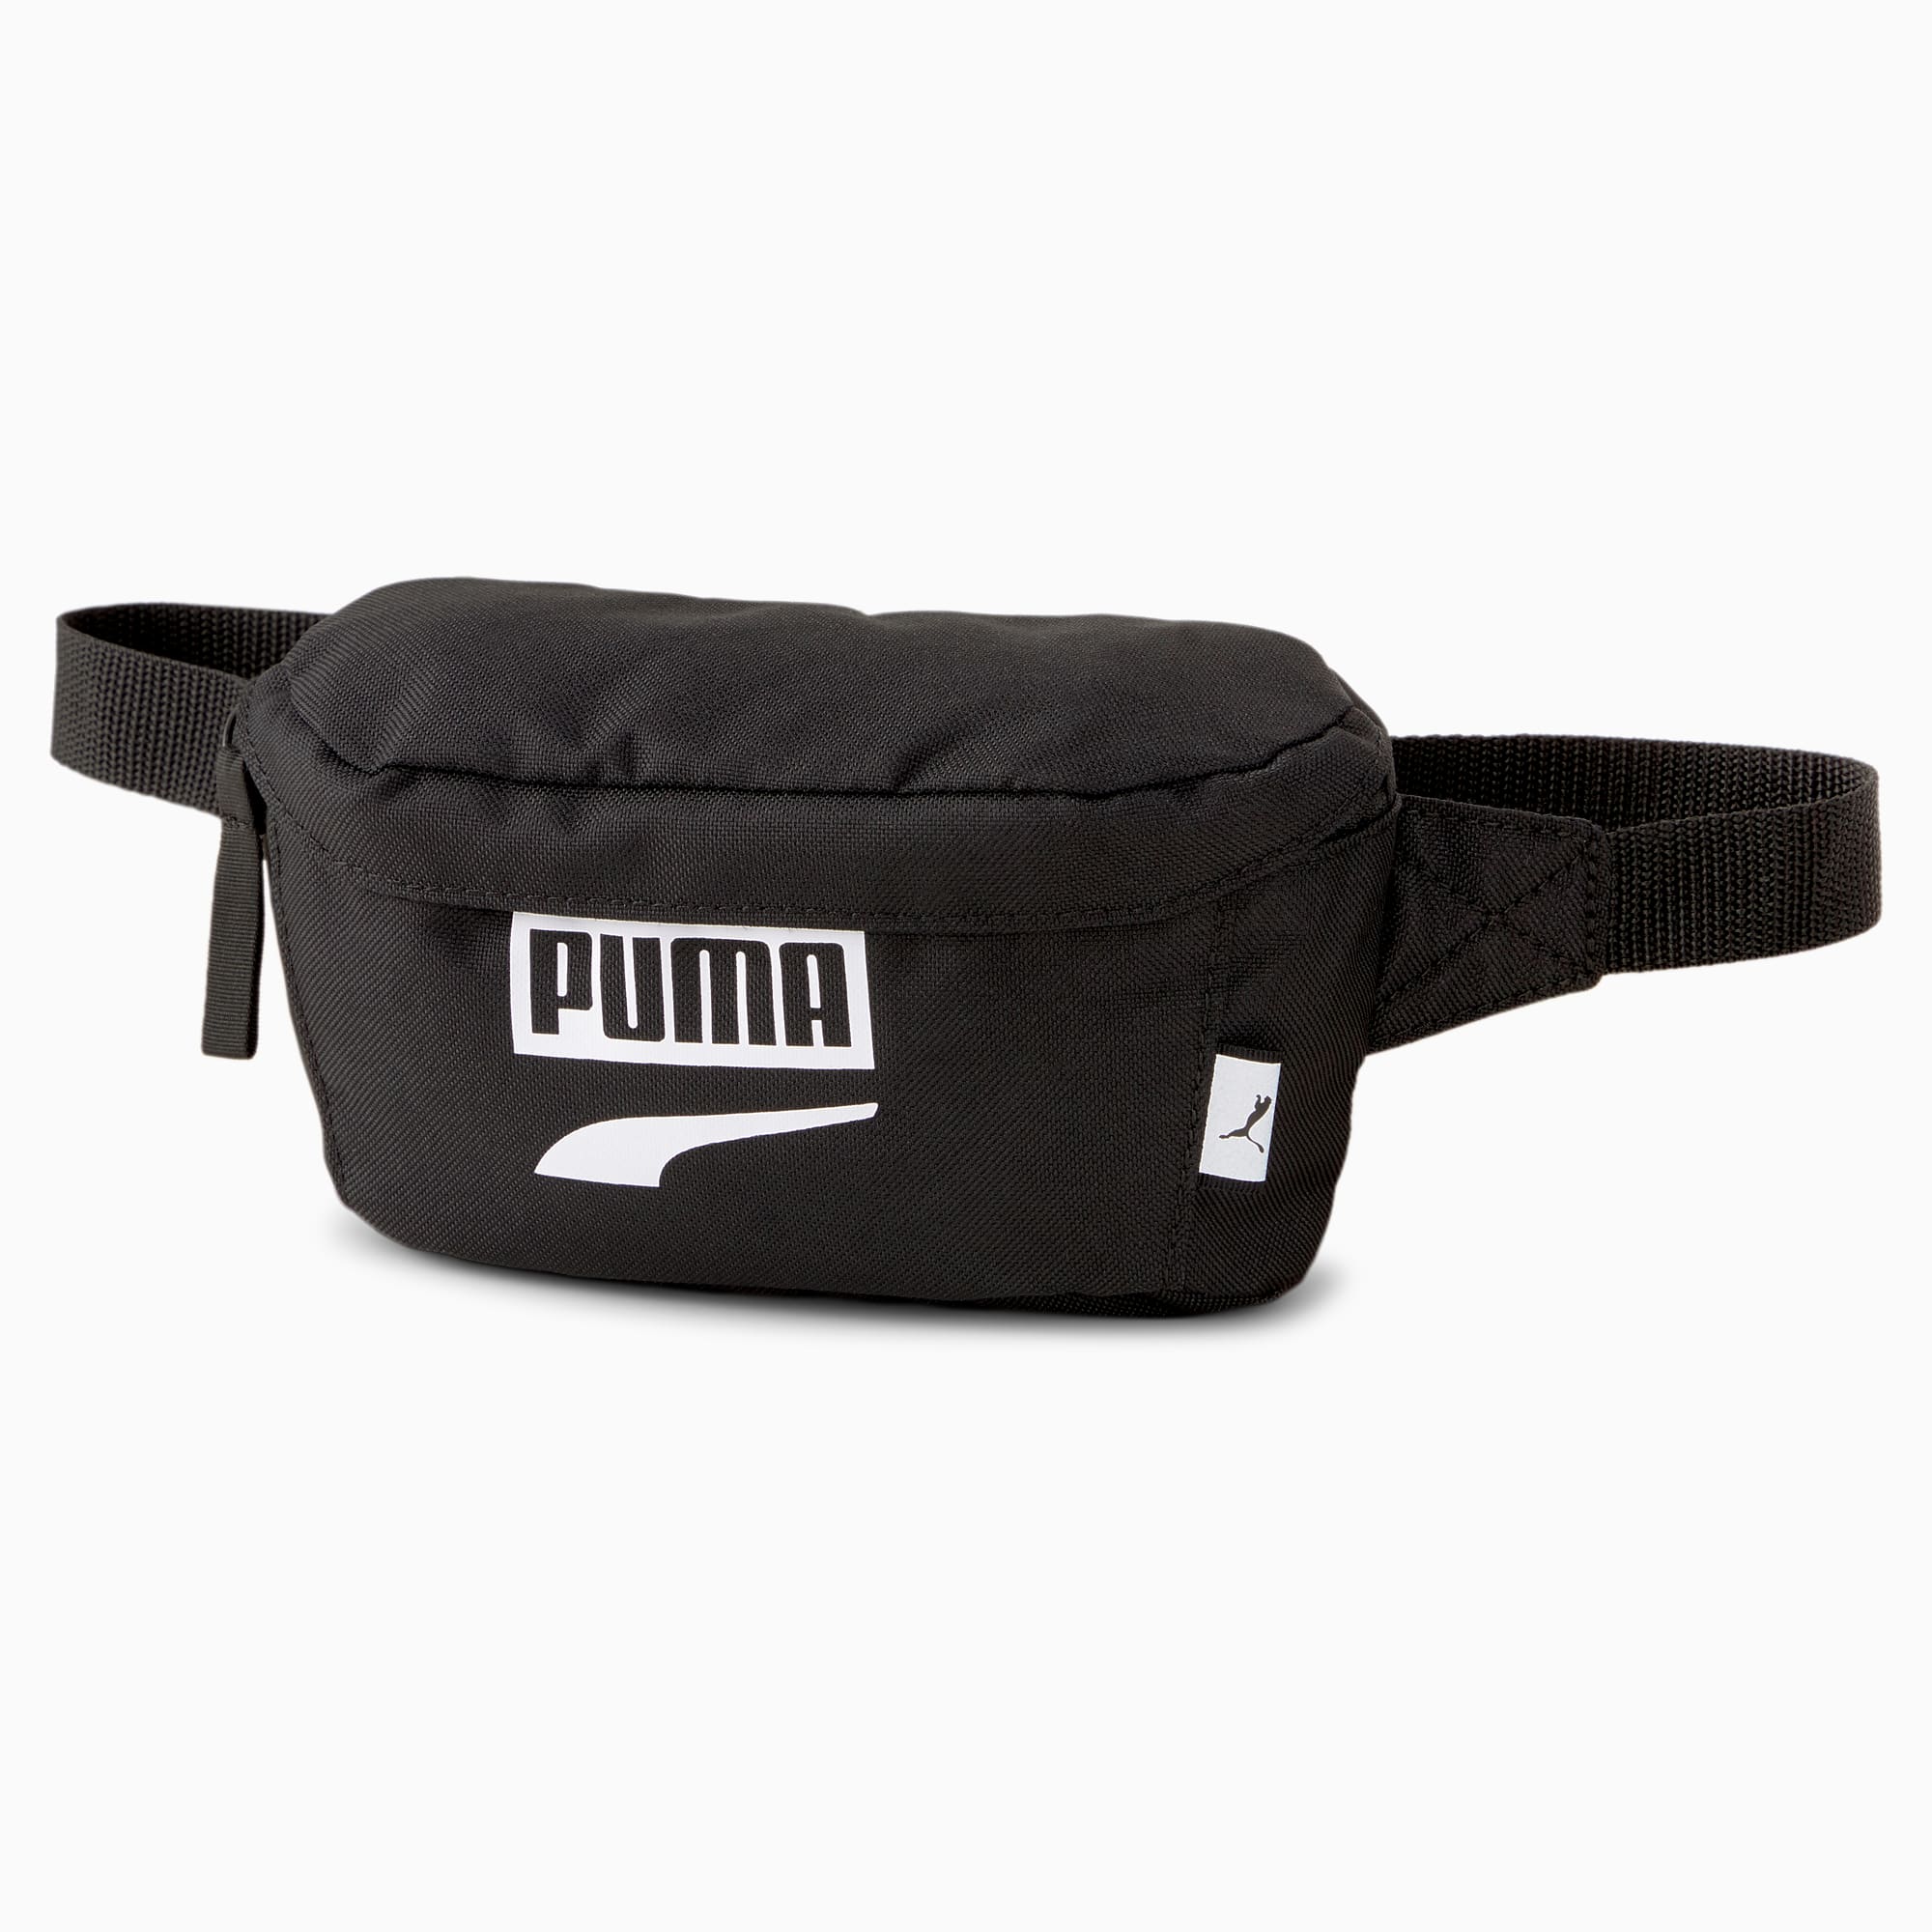 puma belt bag